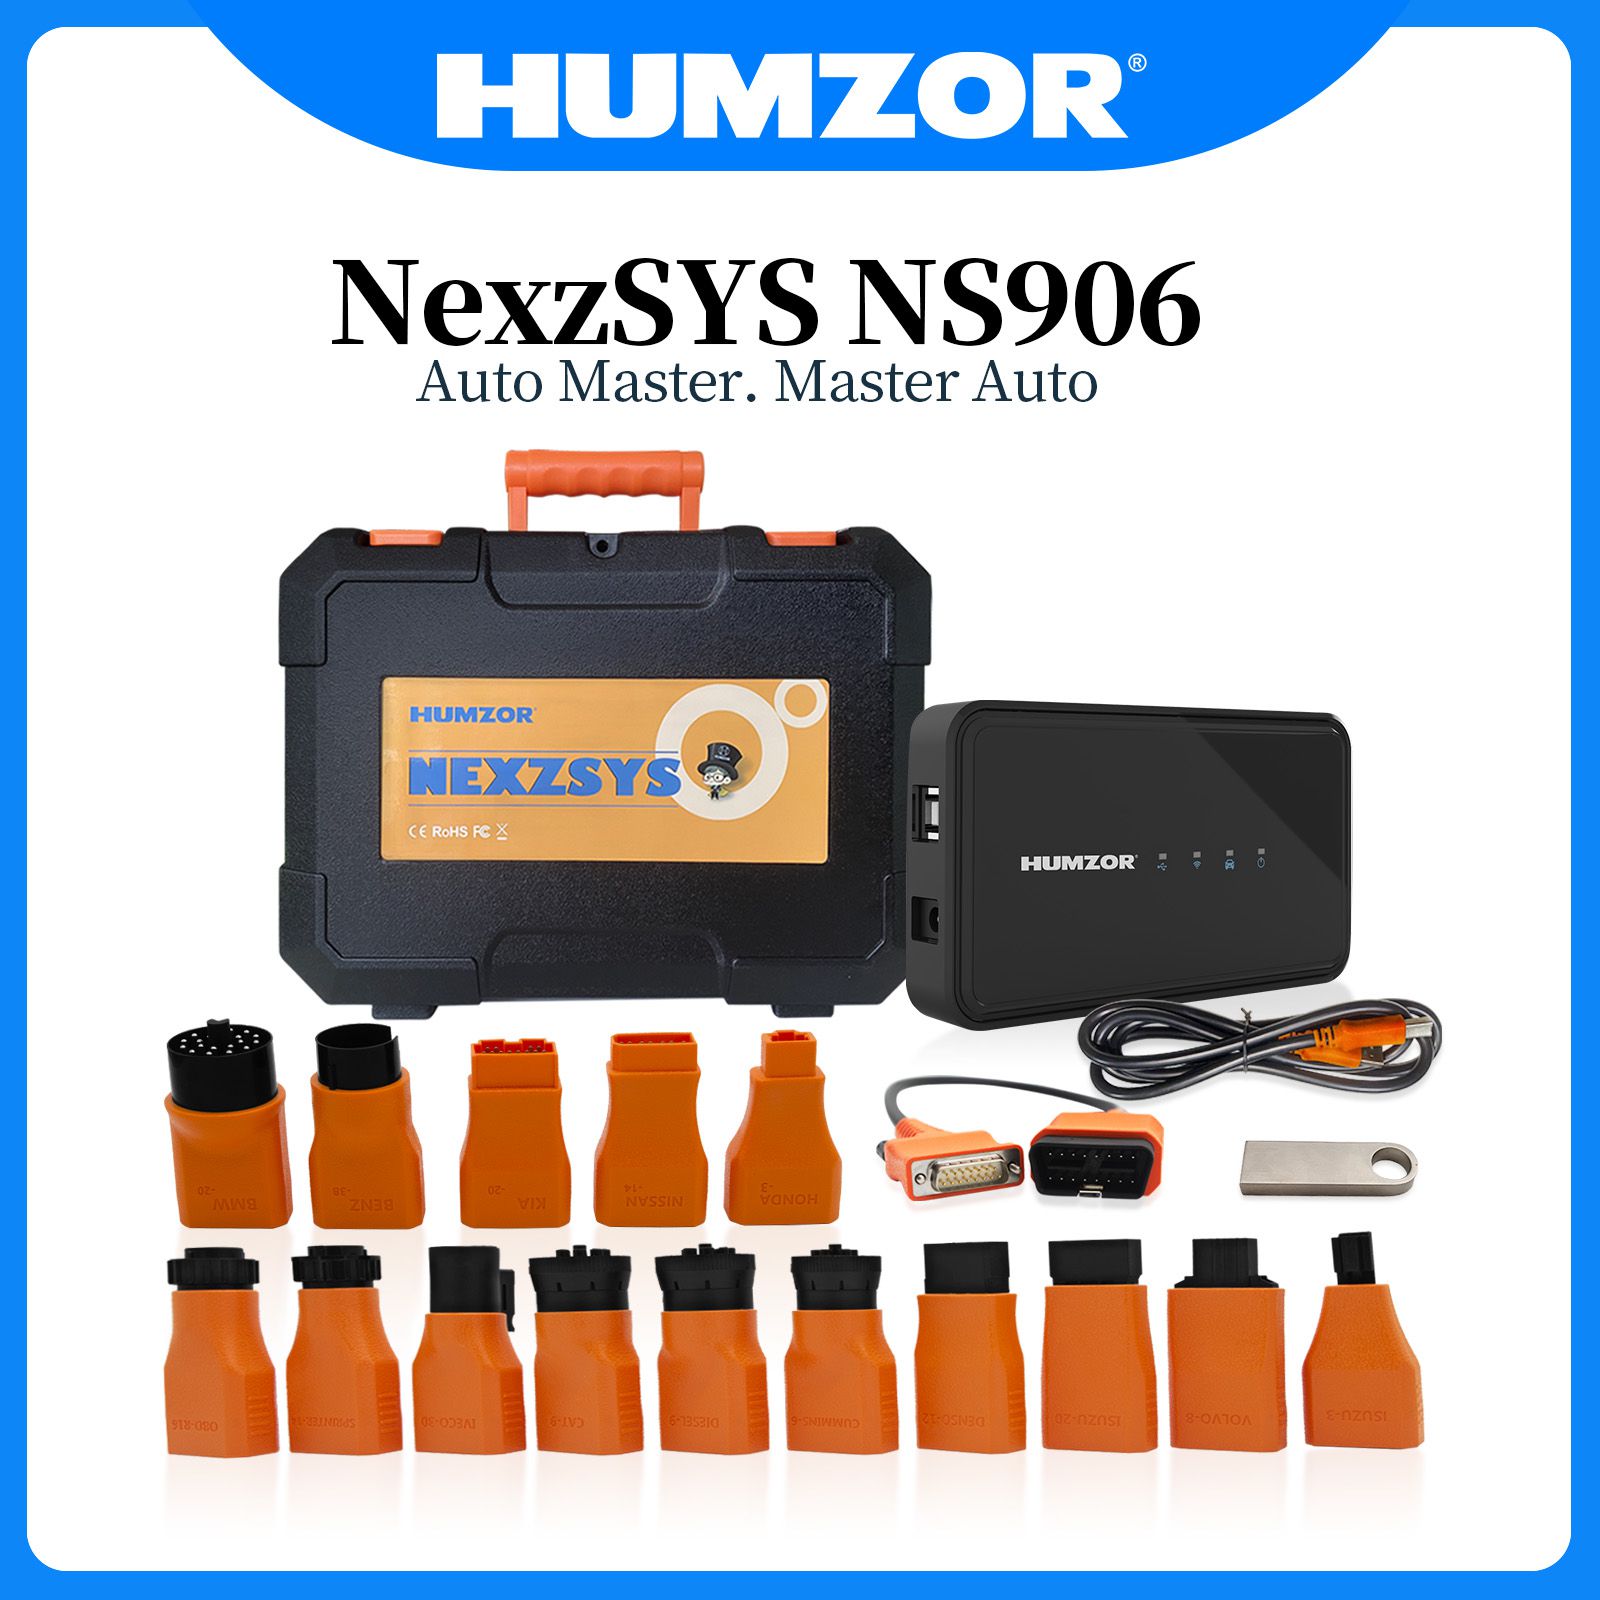 La herramienta de diagnóstico de automóviles y camiones humzor nexzysys ns906 admite el diagnóstico de todos los sistemas del sistema Win7 / 8 / 10